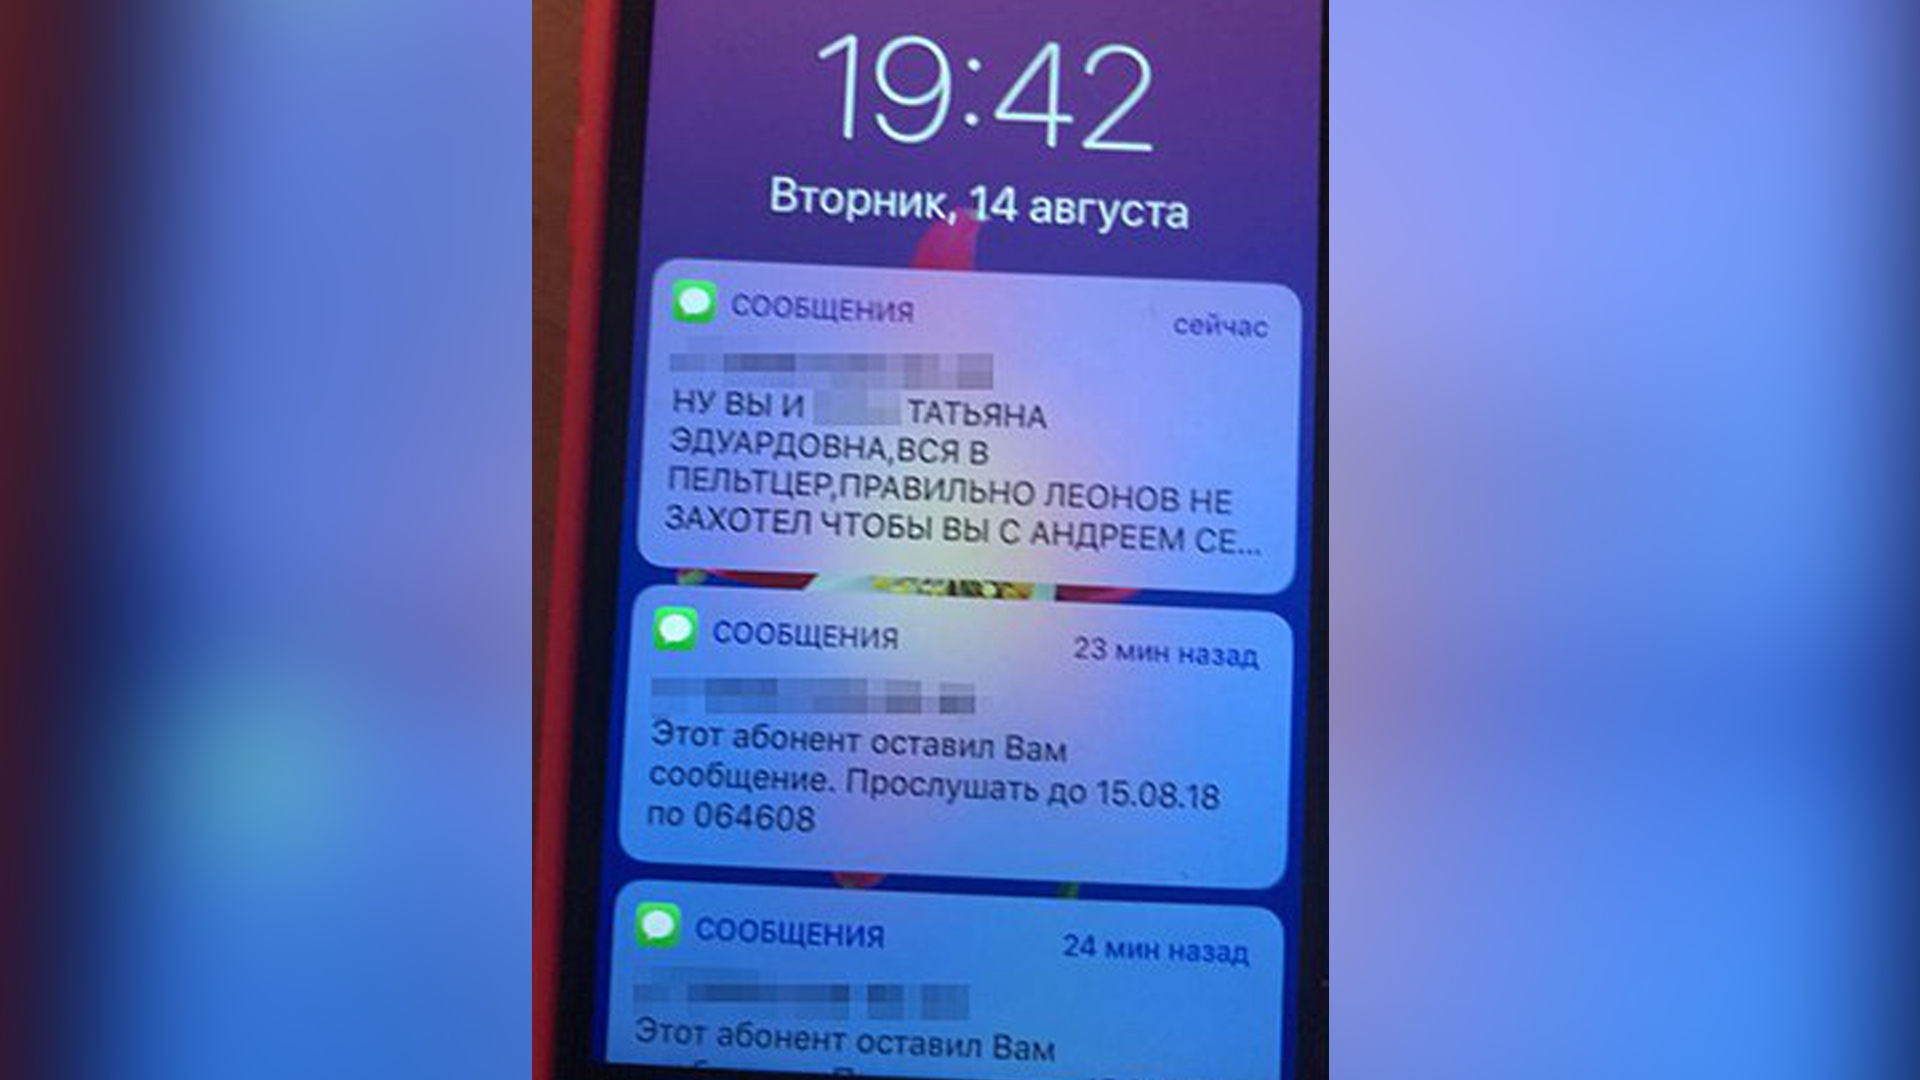 Сообщения, присланные на телефон Кравченко от поклонника-вымогателя Александра. Фото: © МК